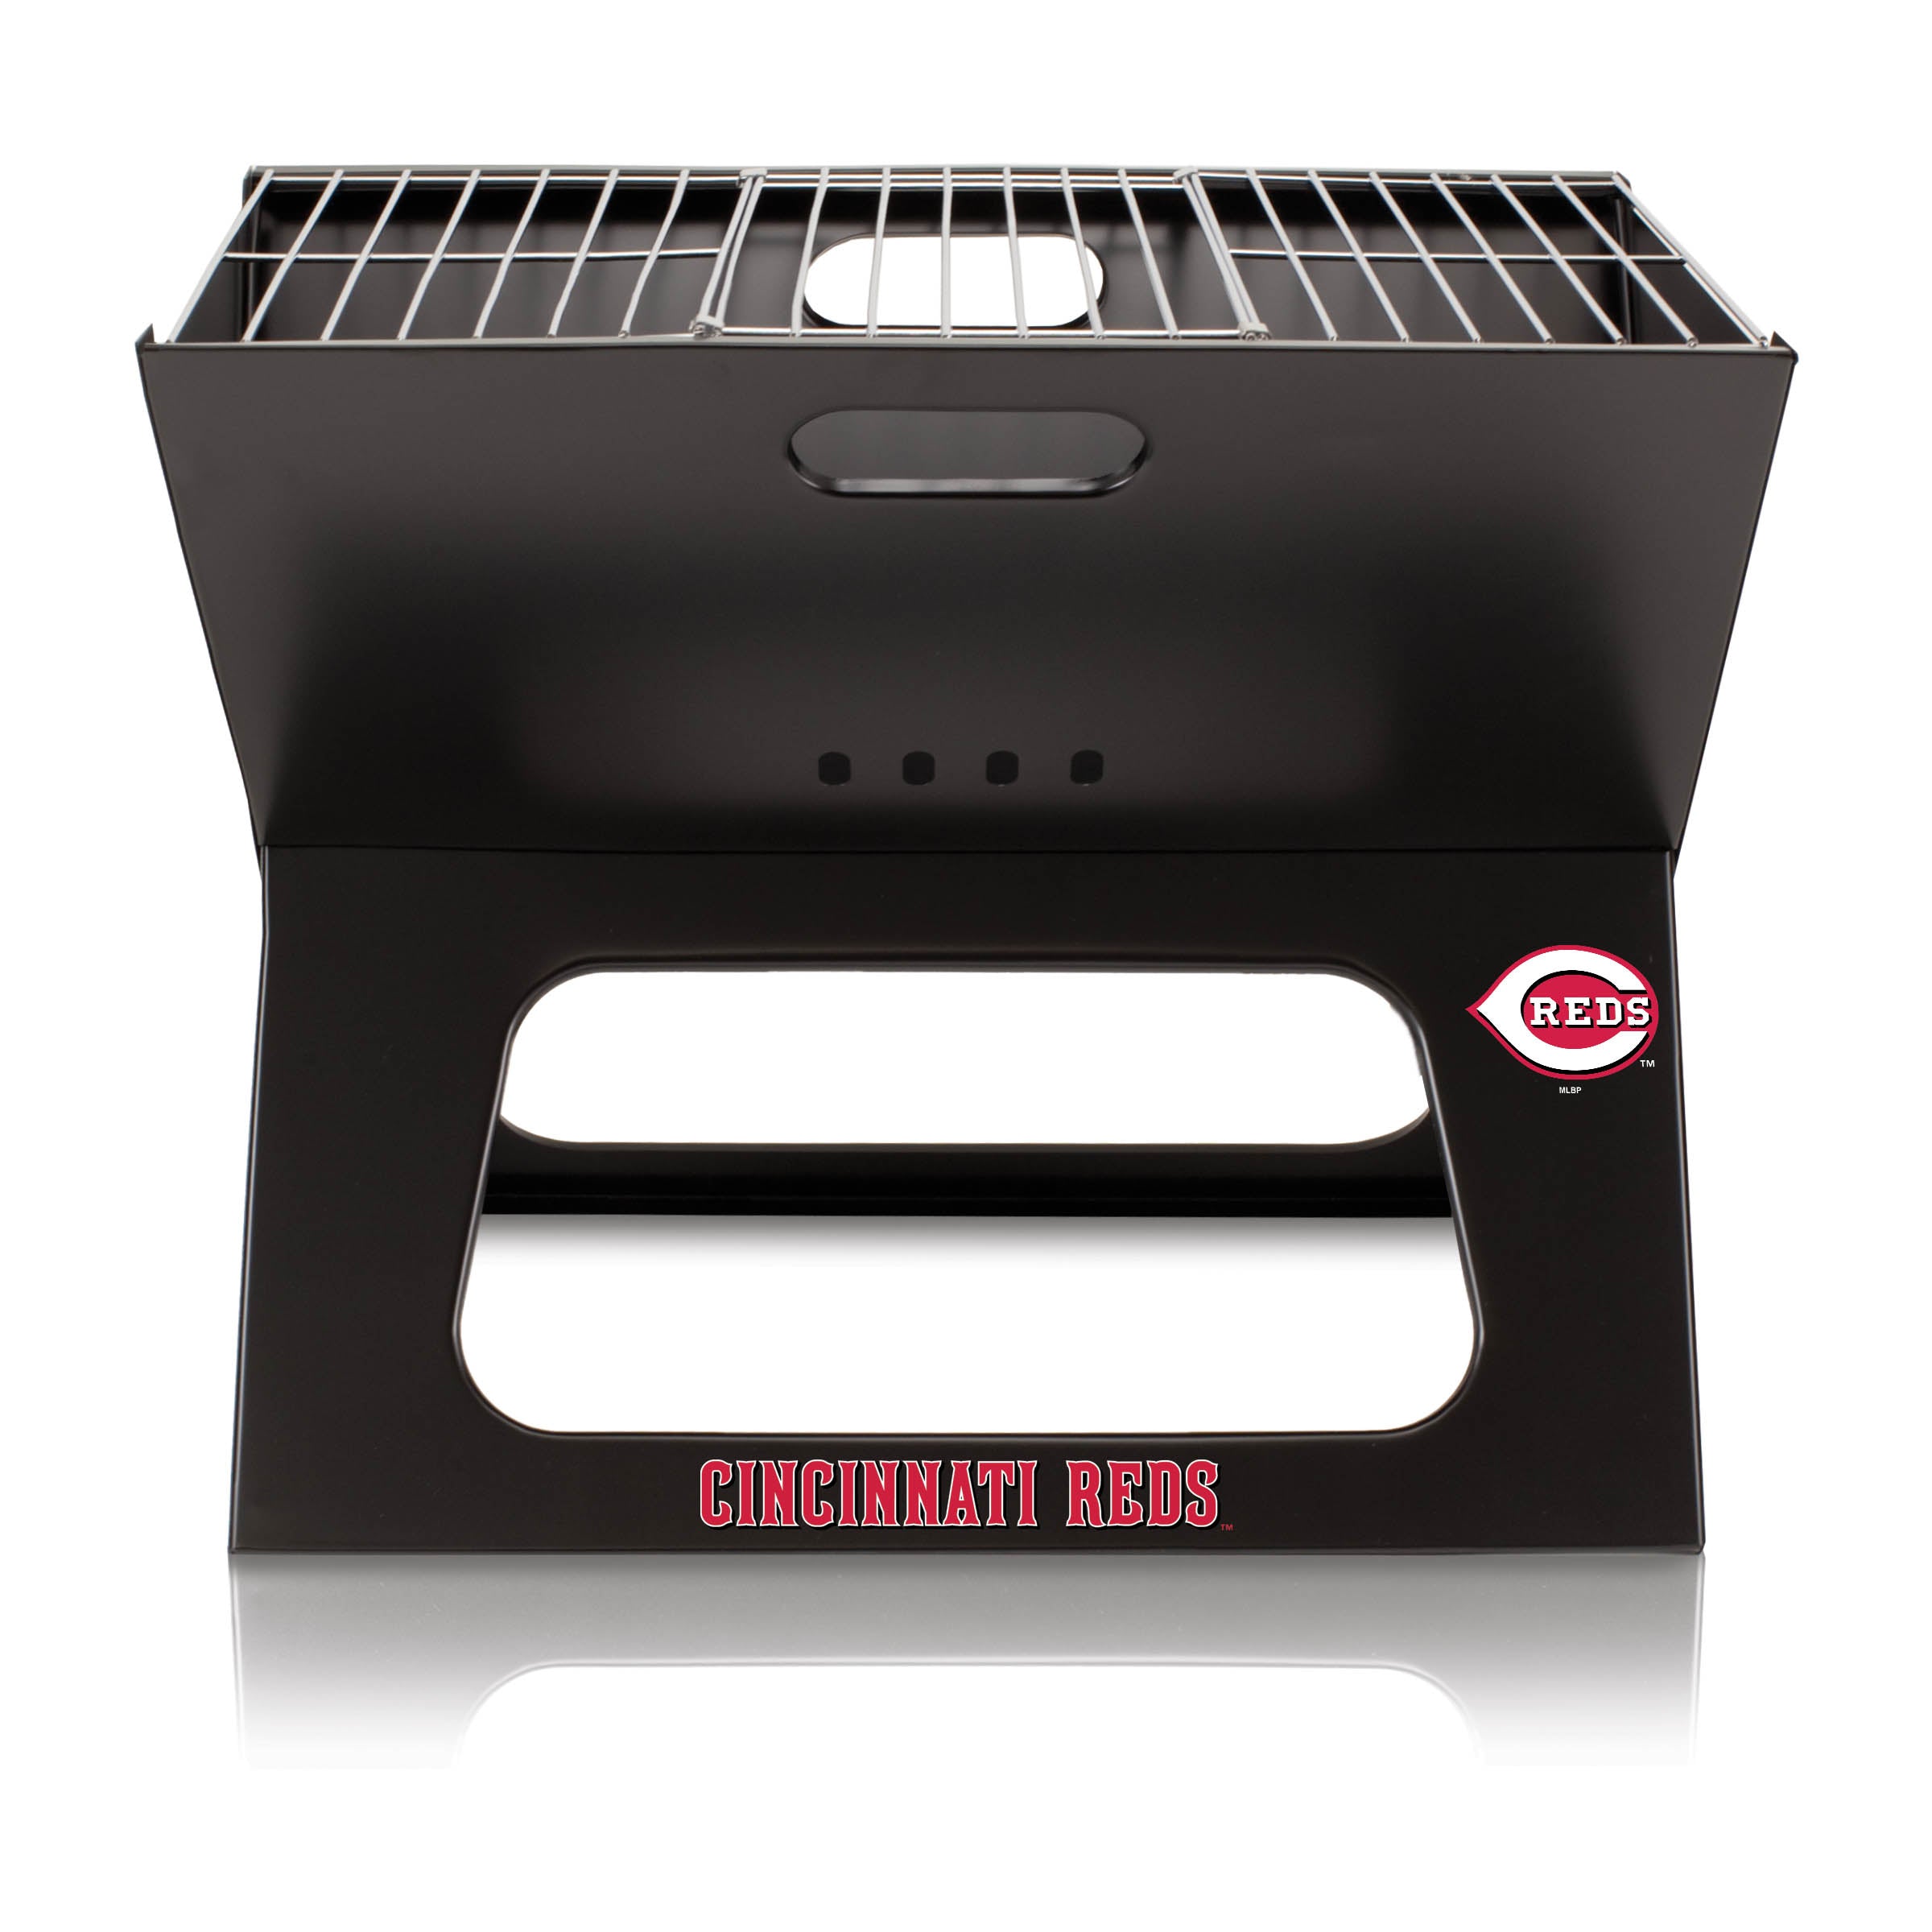 Cincinnati Reds - X-Grill Portable Charcoal BBQ Grill